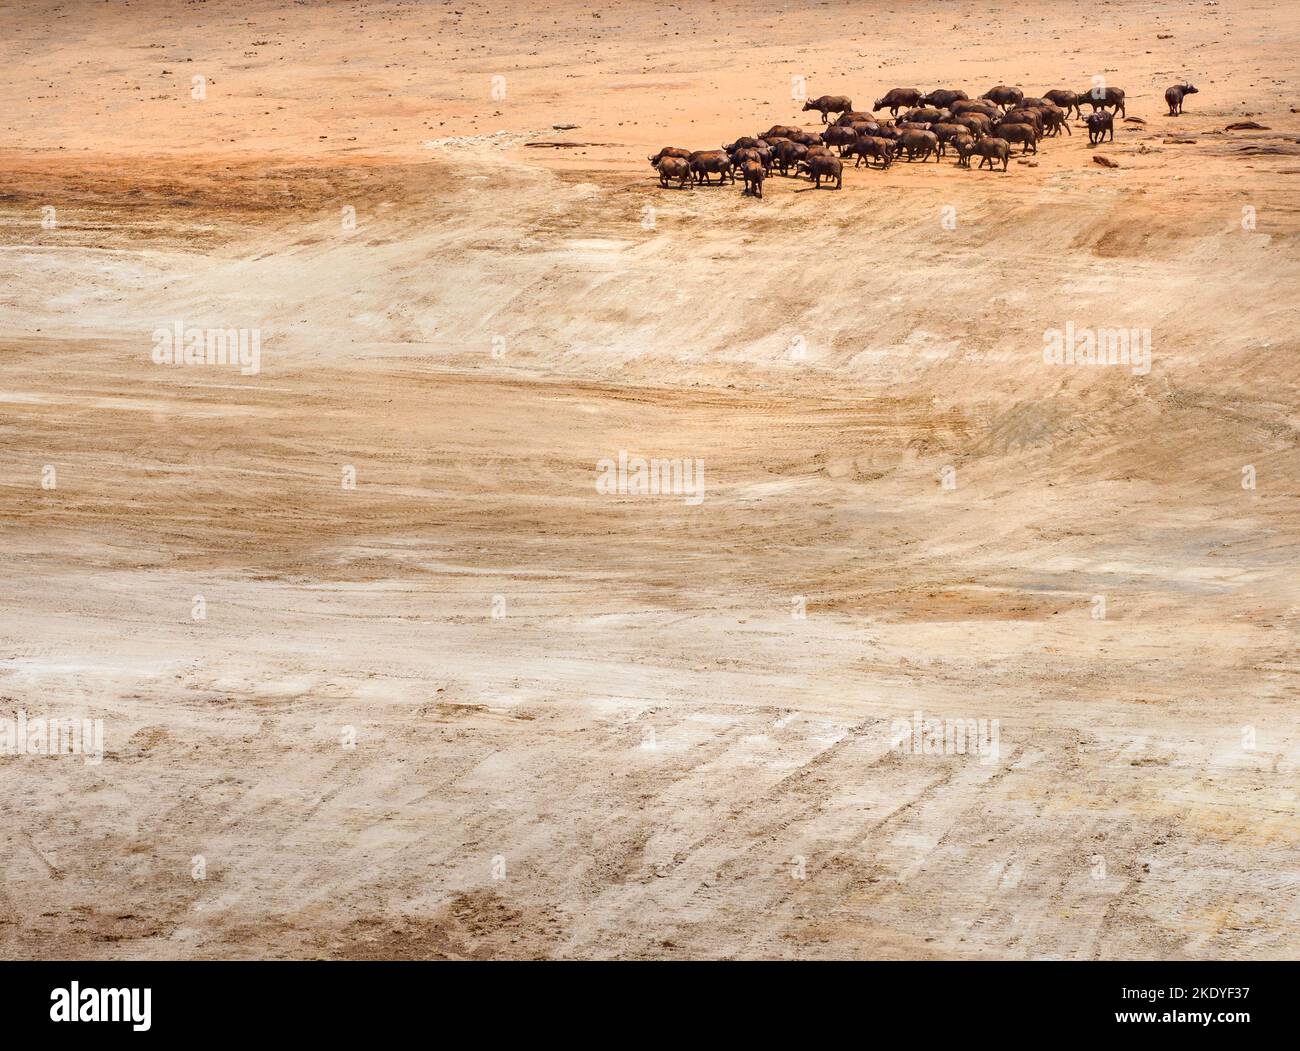 Rebaño de búfalos africanos B. cincerus llegando a un gran pozo de agua seco - normalmente un pequeño lago de Mudanda Rock en el Parque Nacional Tsavo de Kenia Foto de stock